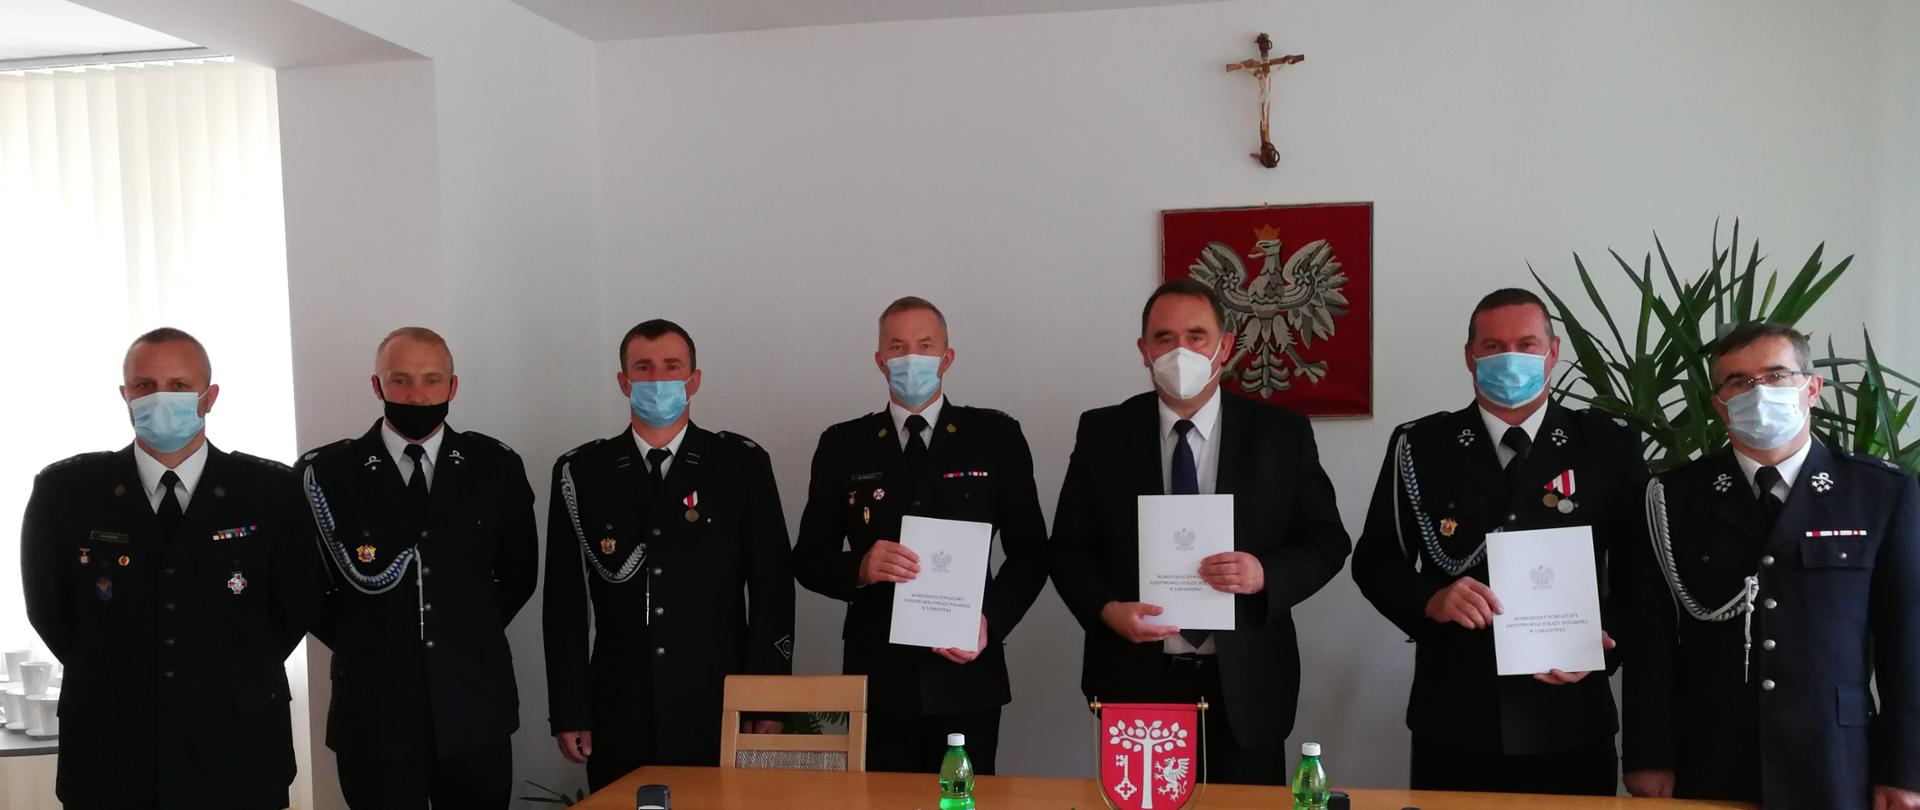 Prezesi i naczelnicy podmiotów ratowniczych włączanych do KSRG tj. OSP w Janowice, podpisują umowę z Wójtem Gminy Dobra oraz Komendantem Powiatowym PSP w Limanowej.